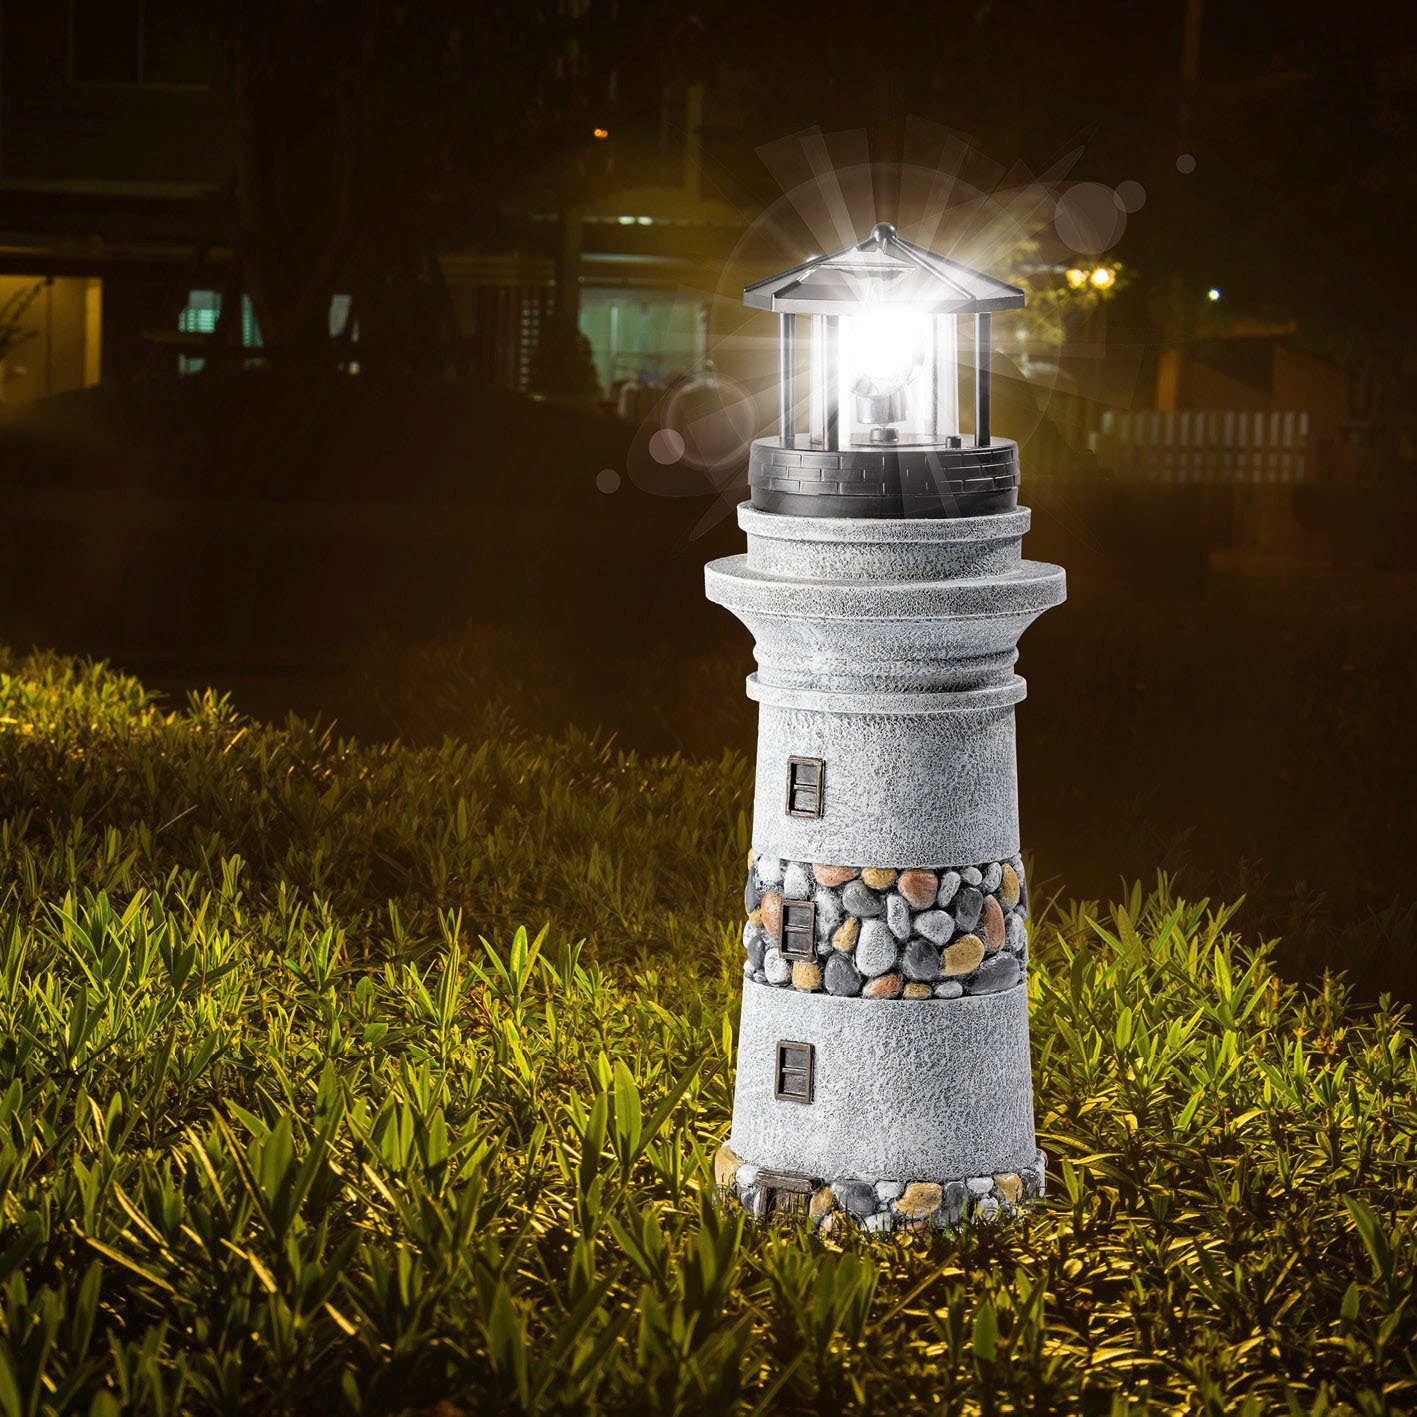 Bleuchtung Leuchtturm 39cm, Solarleuchte Licht Figur LED Garten Stein-Optik EASYmaxx Gartendeko